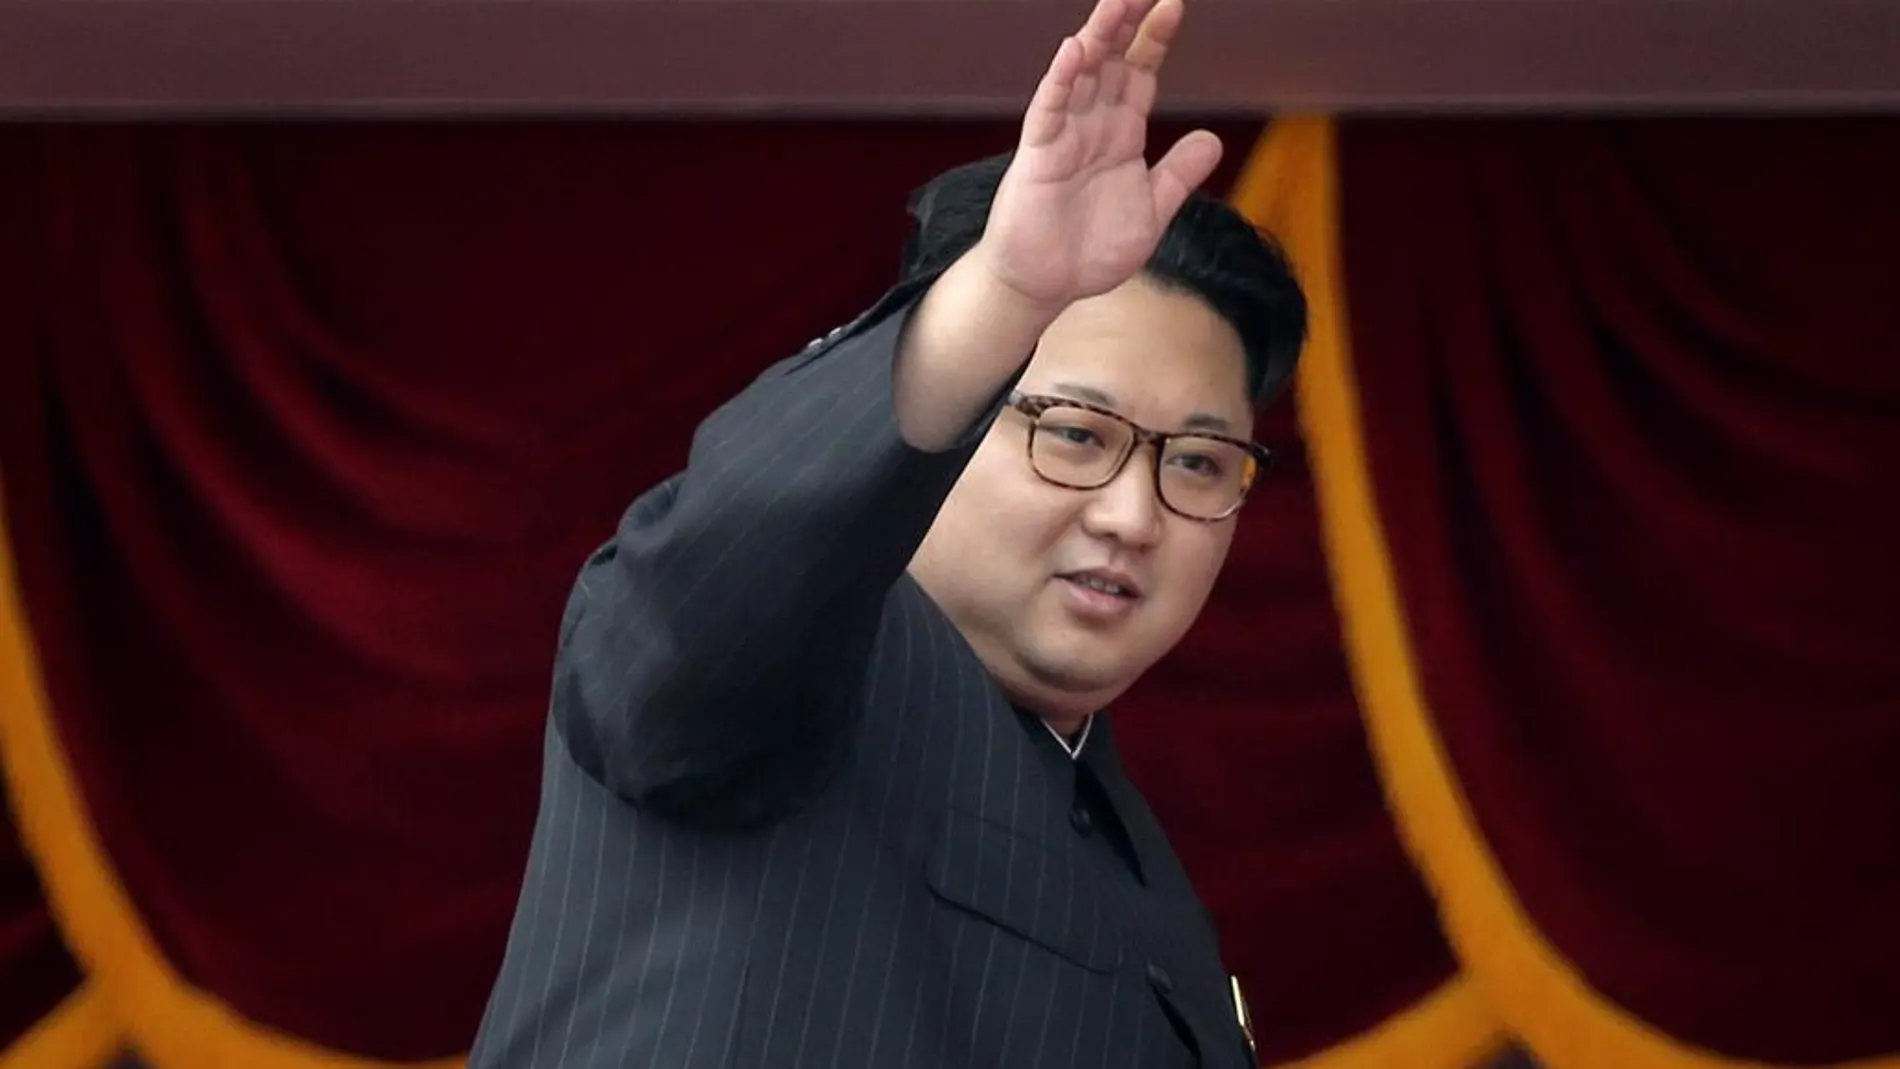 El líder norcoreano Kim Jong Un en Pyongyang, en una imagen del 10 de mayo de 2016